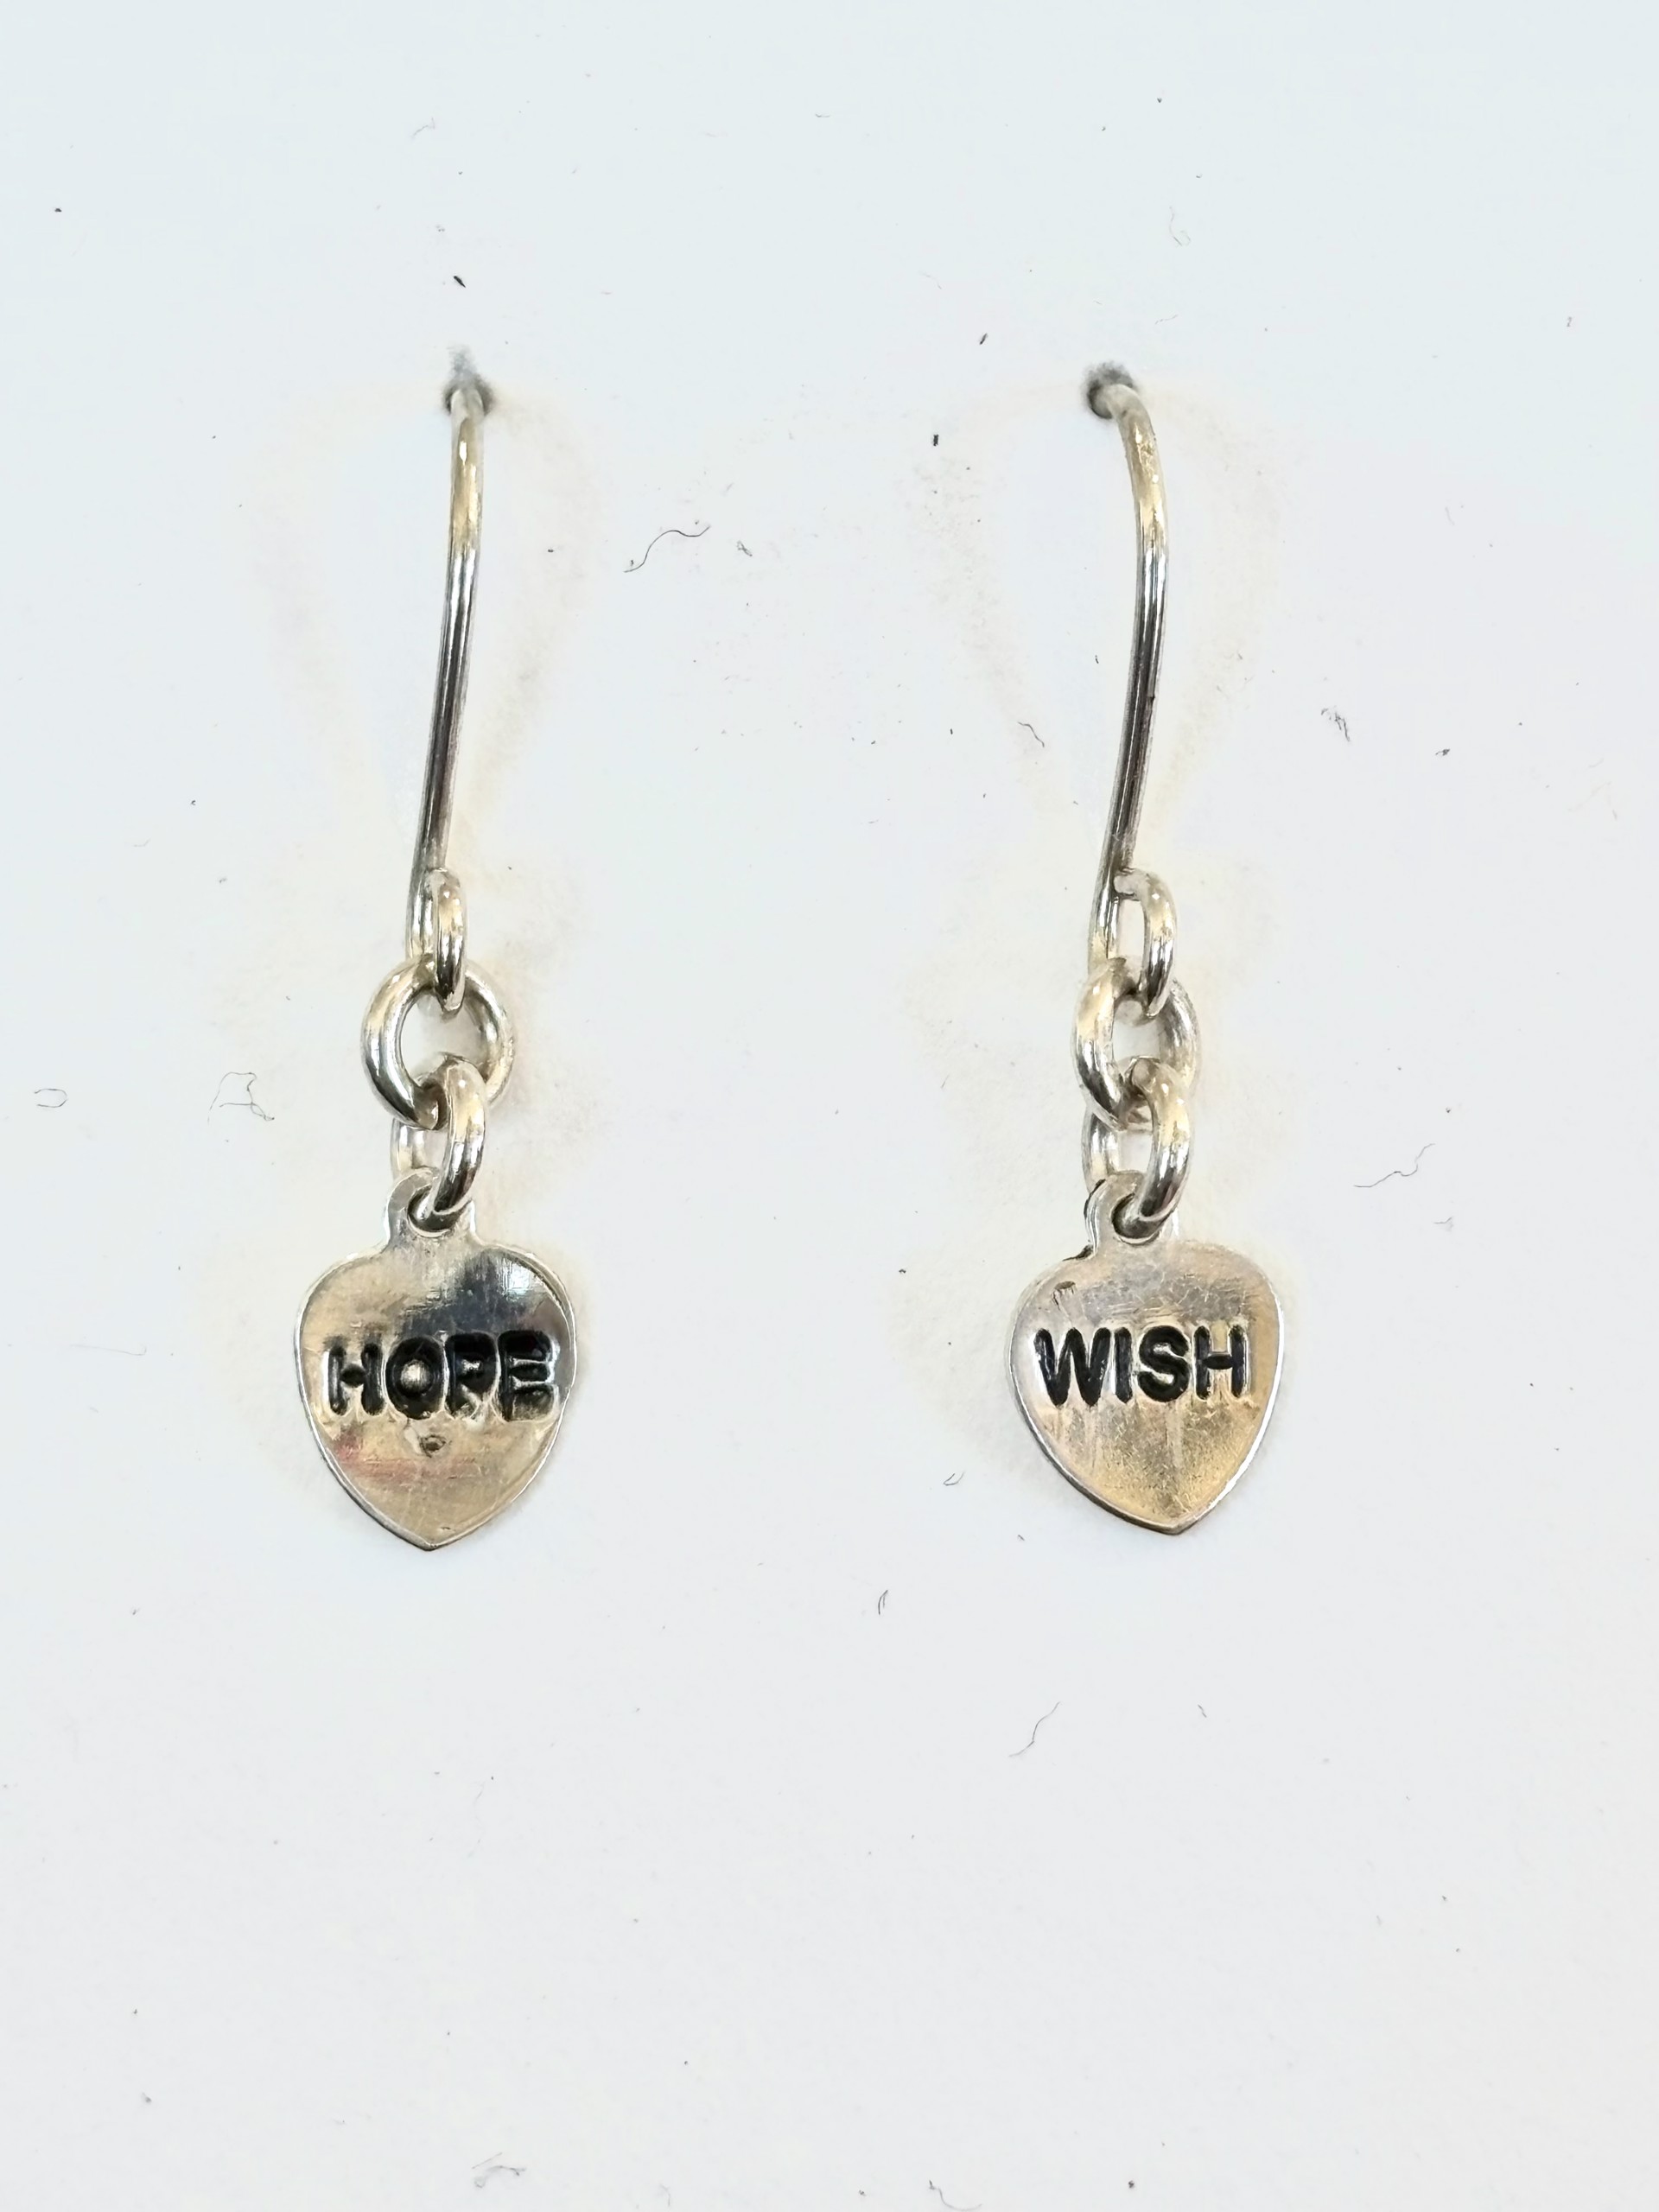 Hope Wish Mantra Earrings by Emelie Hebert